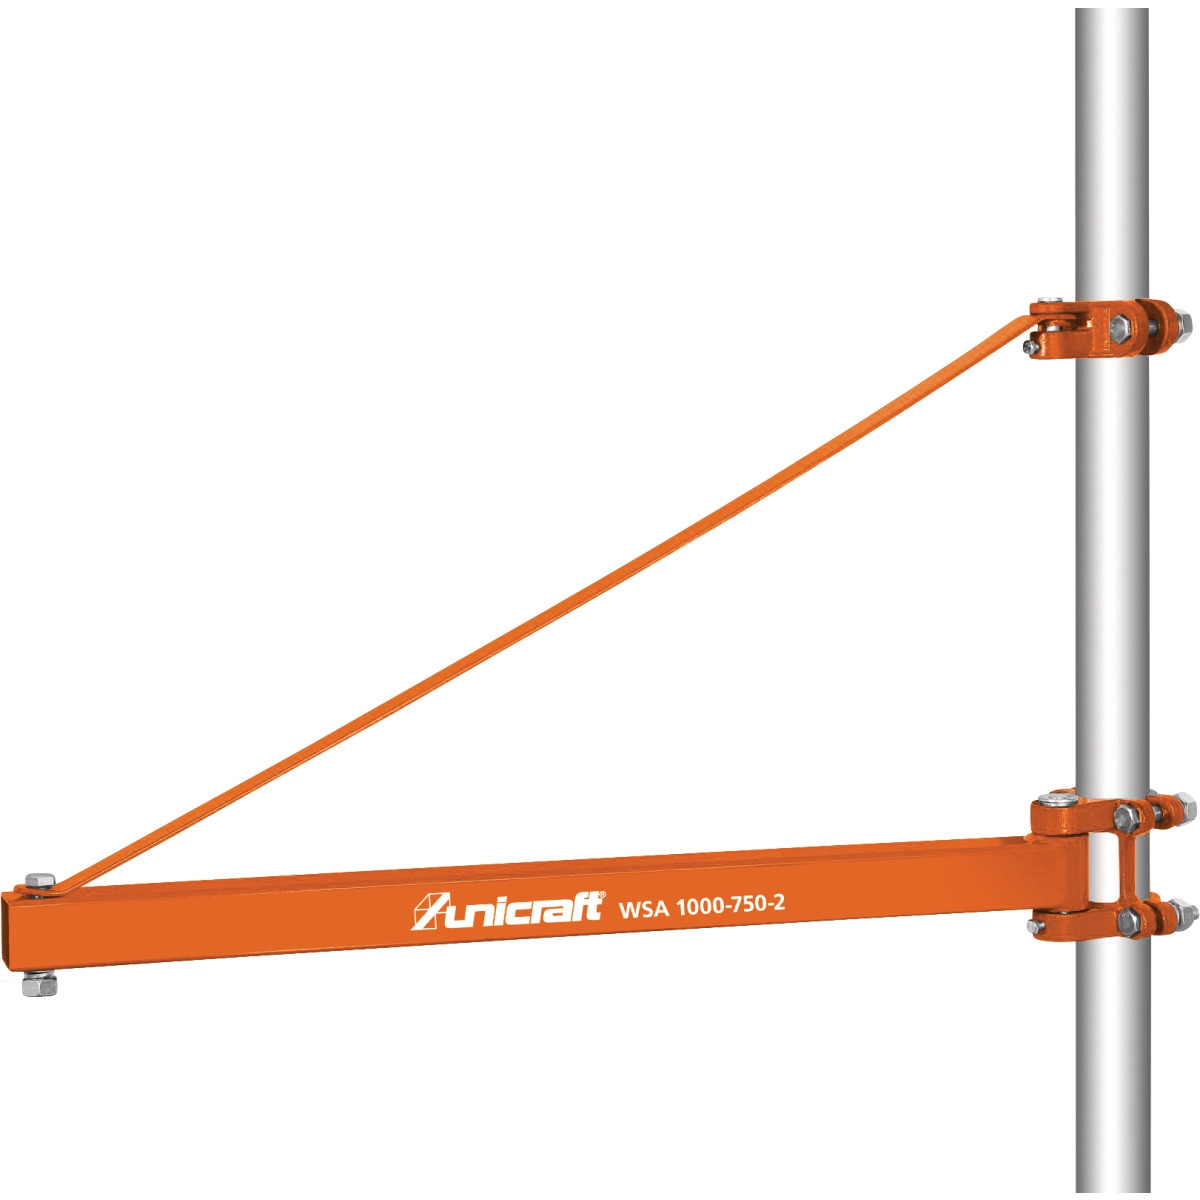 UNICRAFT Schwenk-Kranhalterung WSA 1000-750-2 / 1000 kg